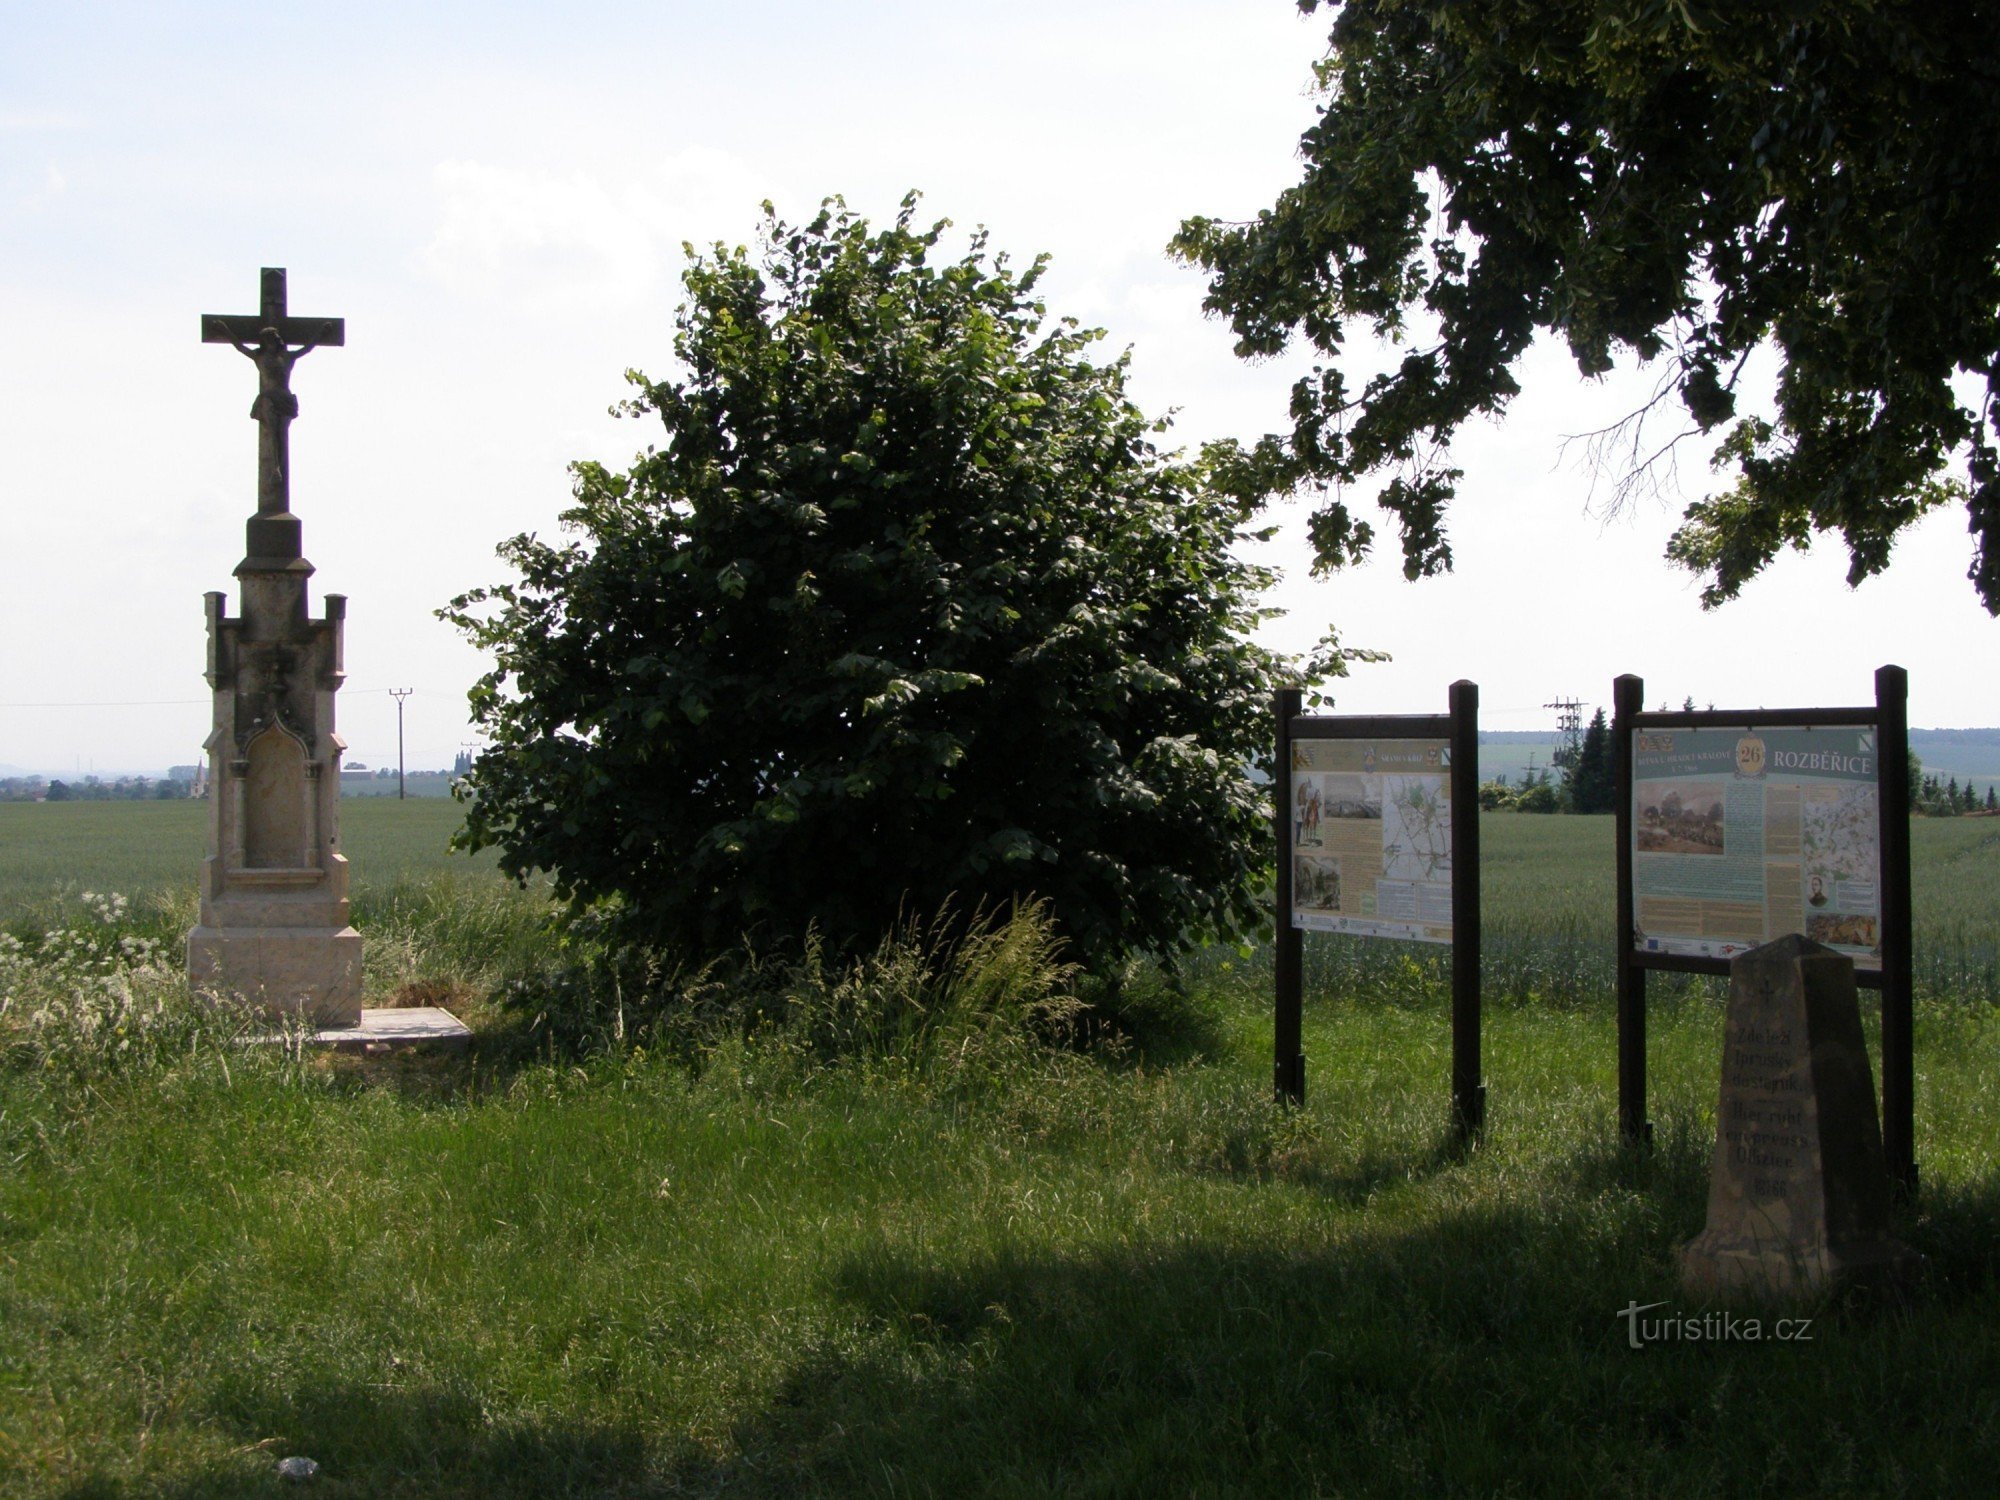 Răscruce turistică Rozběřice - lângă crucea lui Šrám